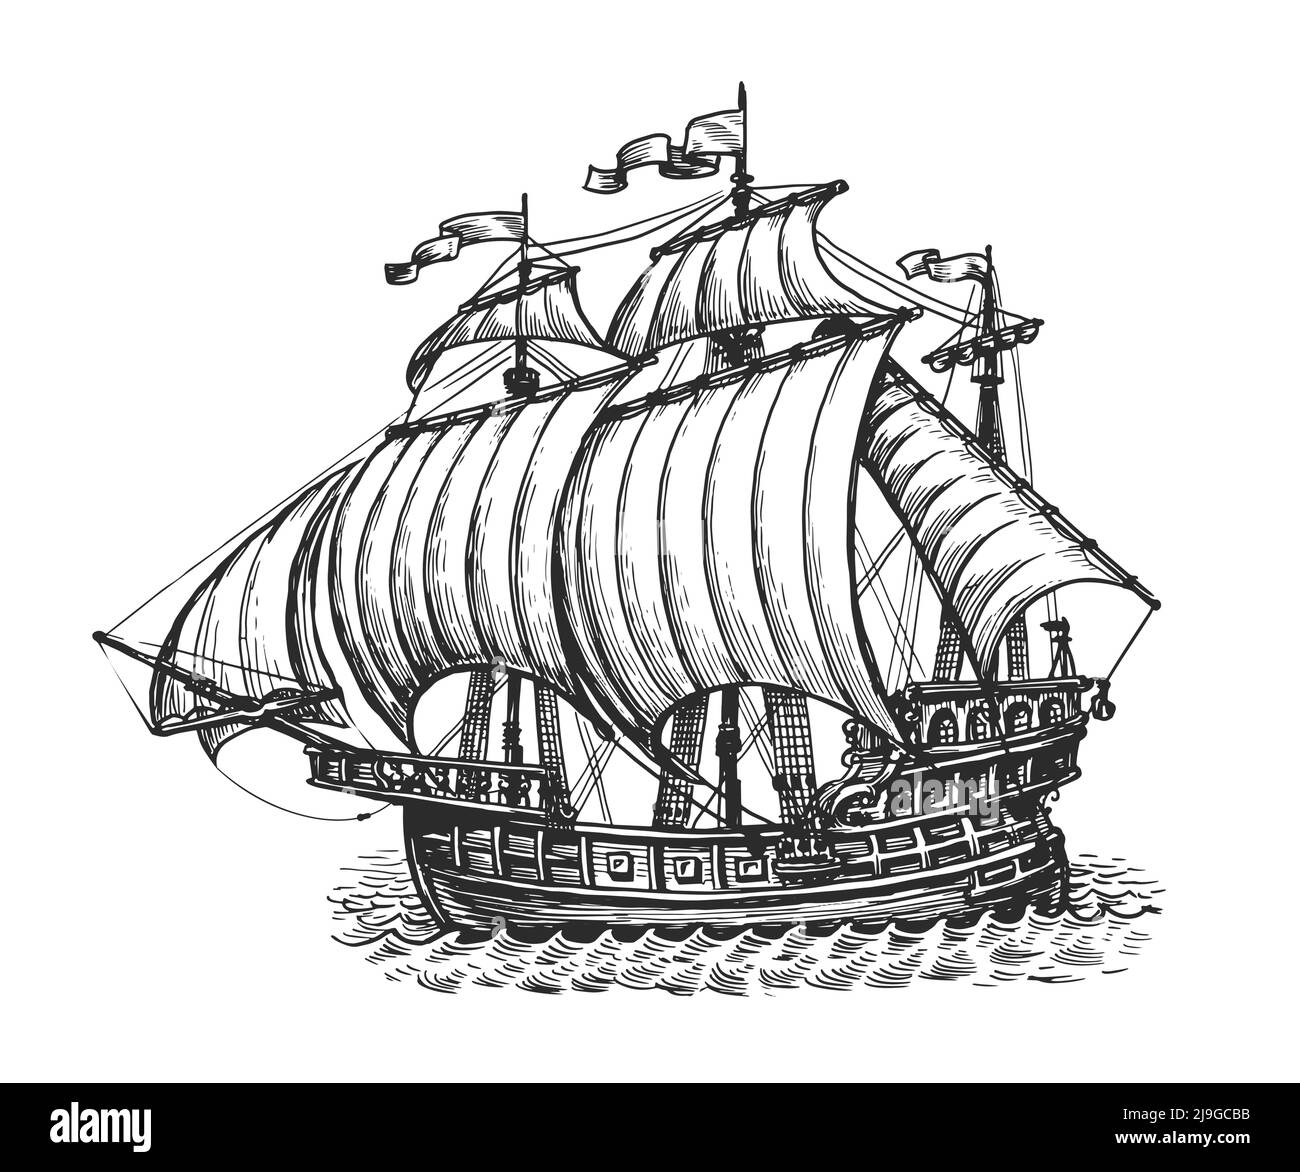 Skizze eines alten Segelschiffs. Nautisches Konzept. Handgezeichnete Vektorgrafik im Vintage-Gravurstil Stock Vektor